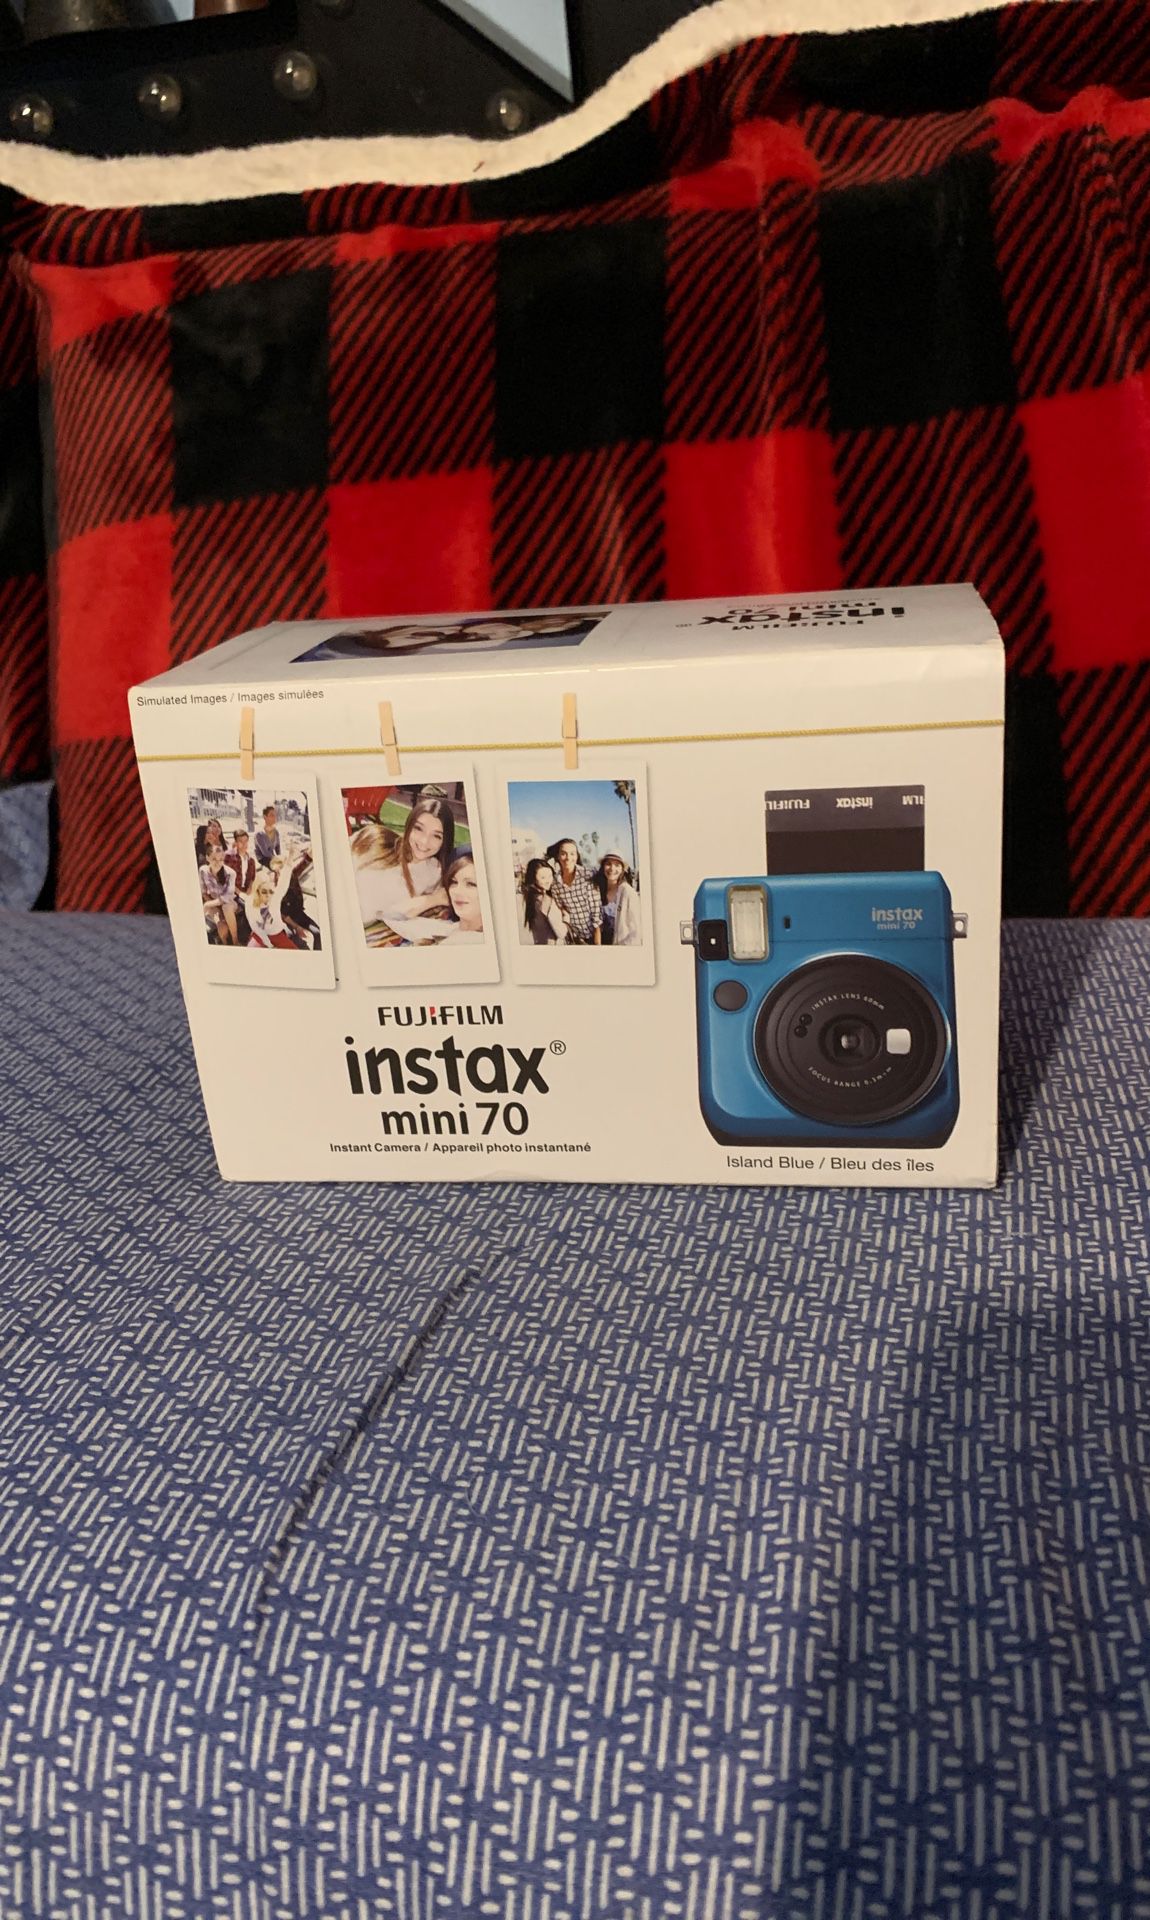 Fuji film instax mini camera